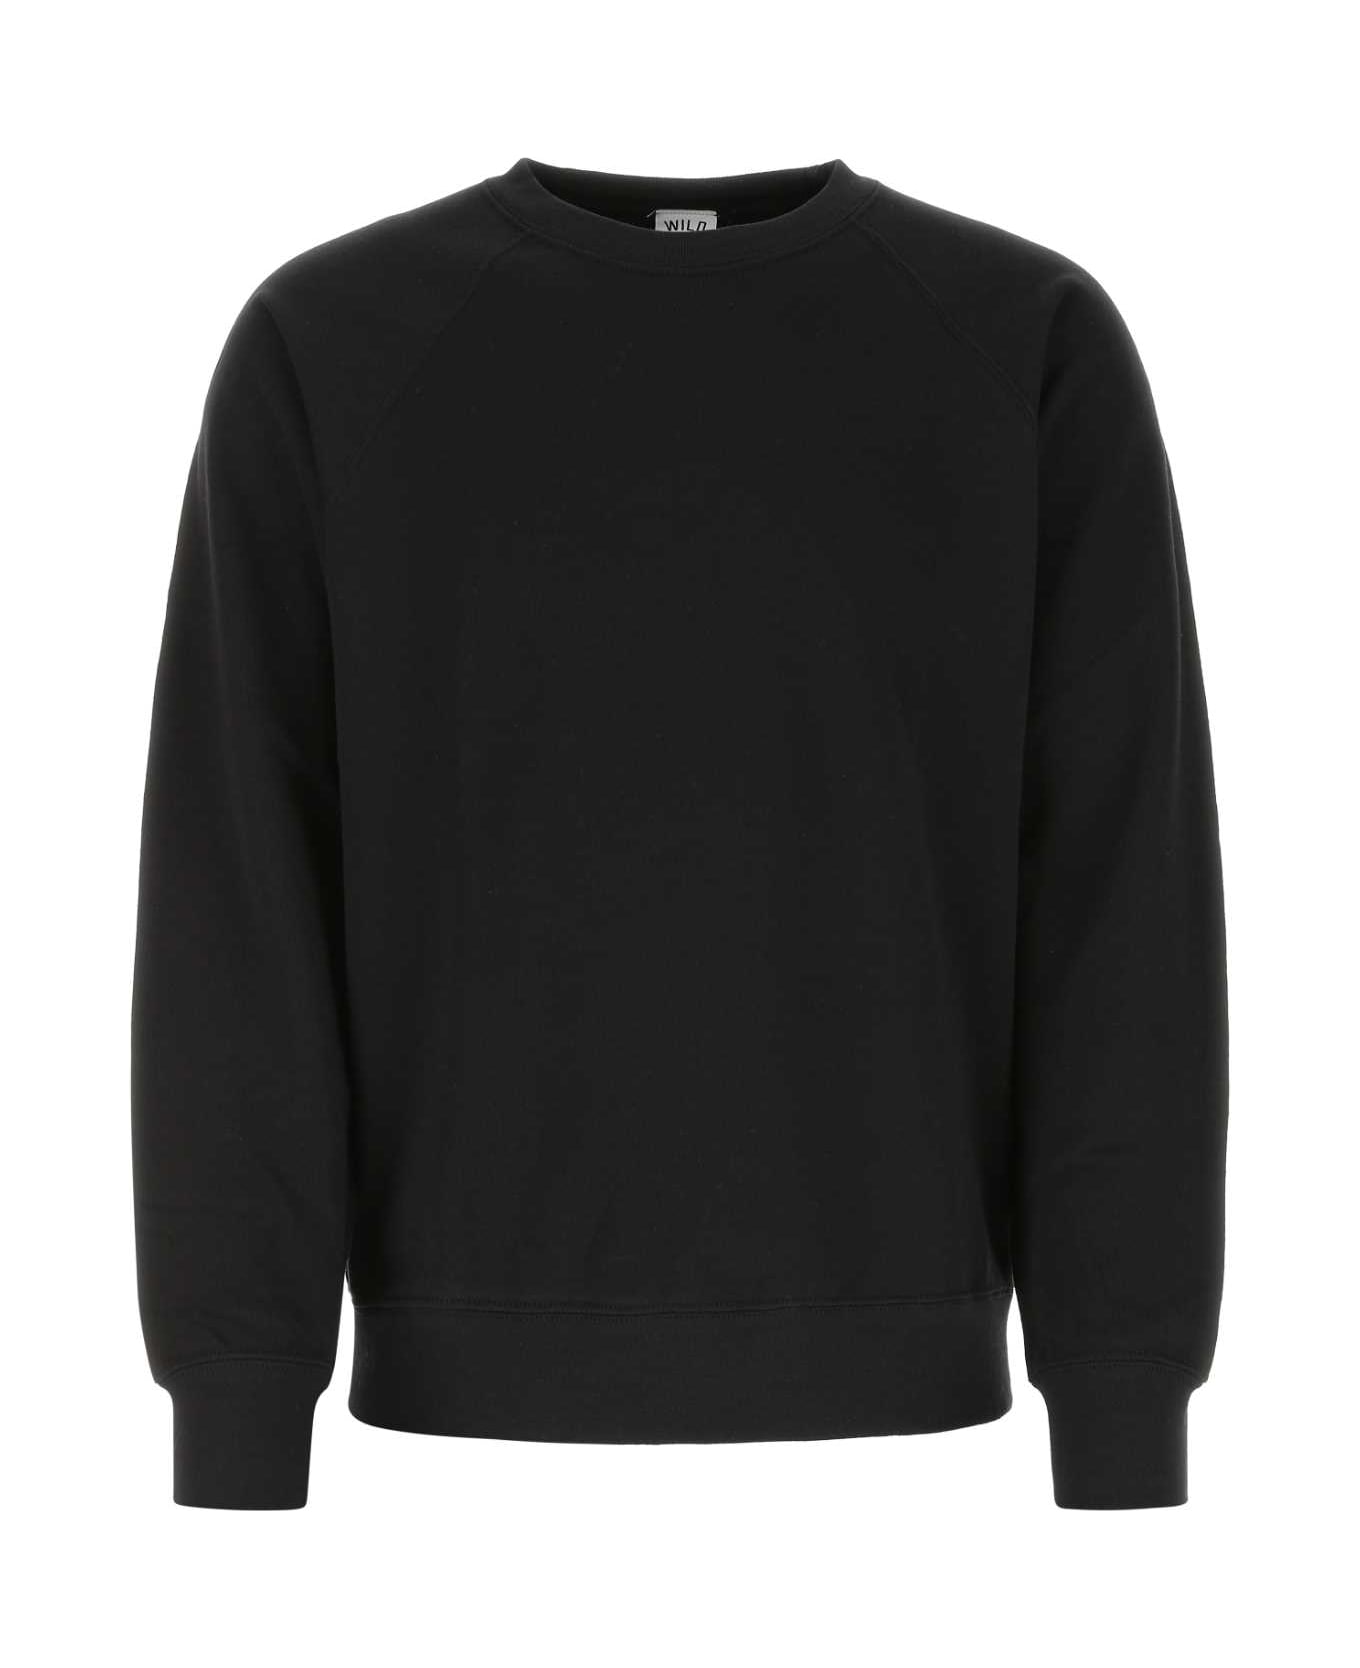 Wild Donkey Black Cotton Blend Sweatshirt - WD090